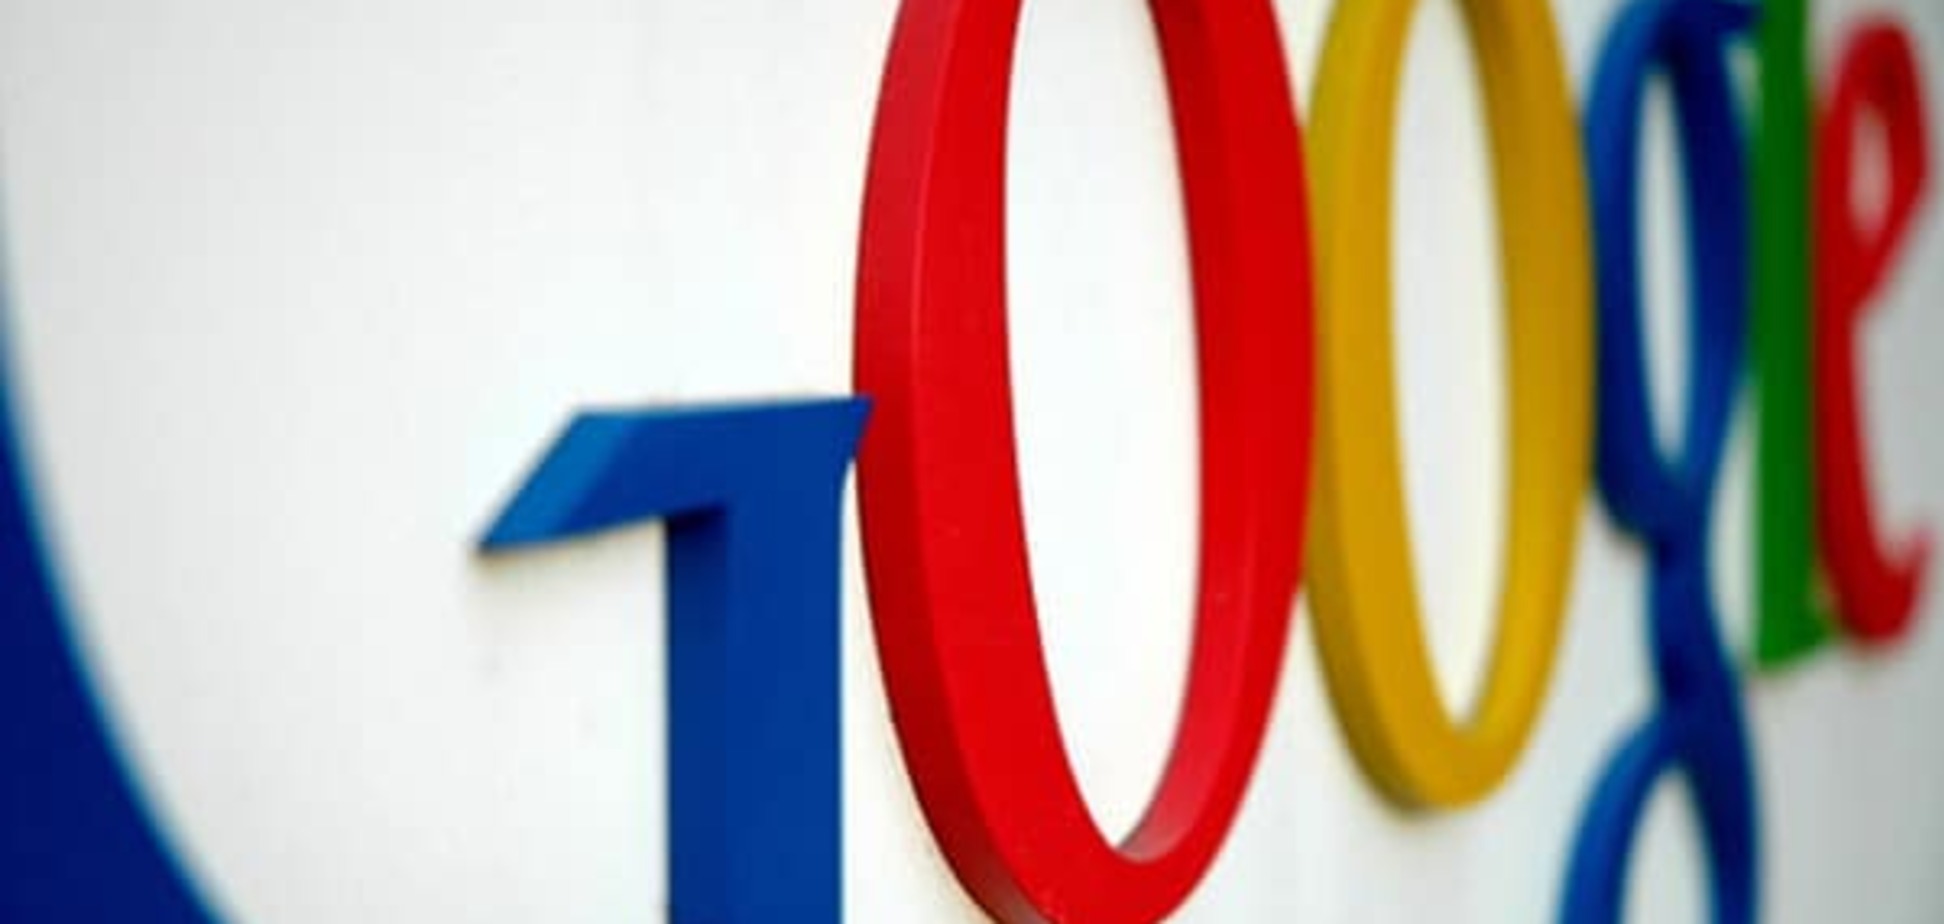 Google и Яндекс попали в российских список экстремистских материалов